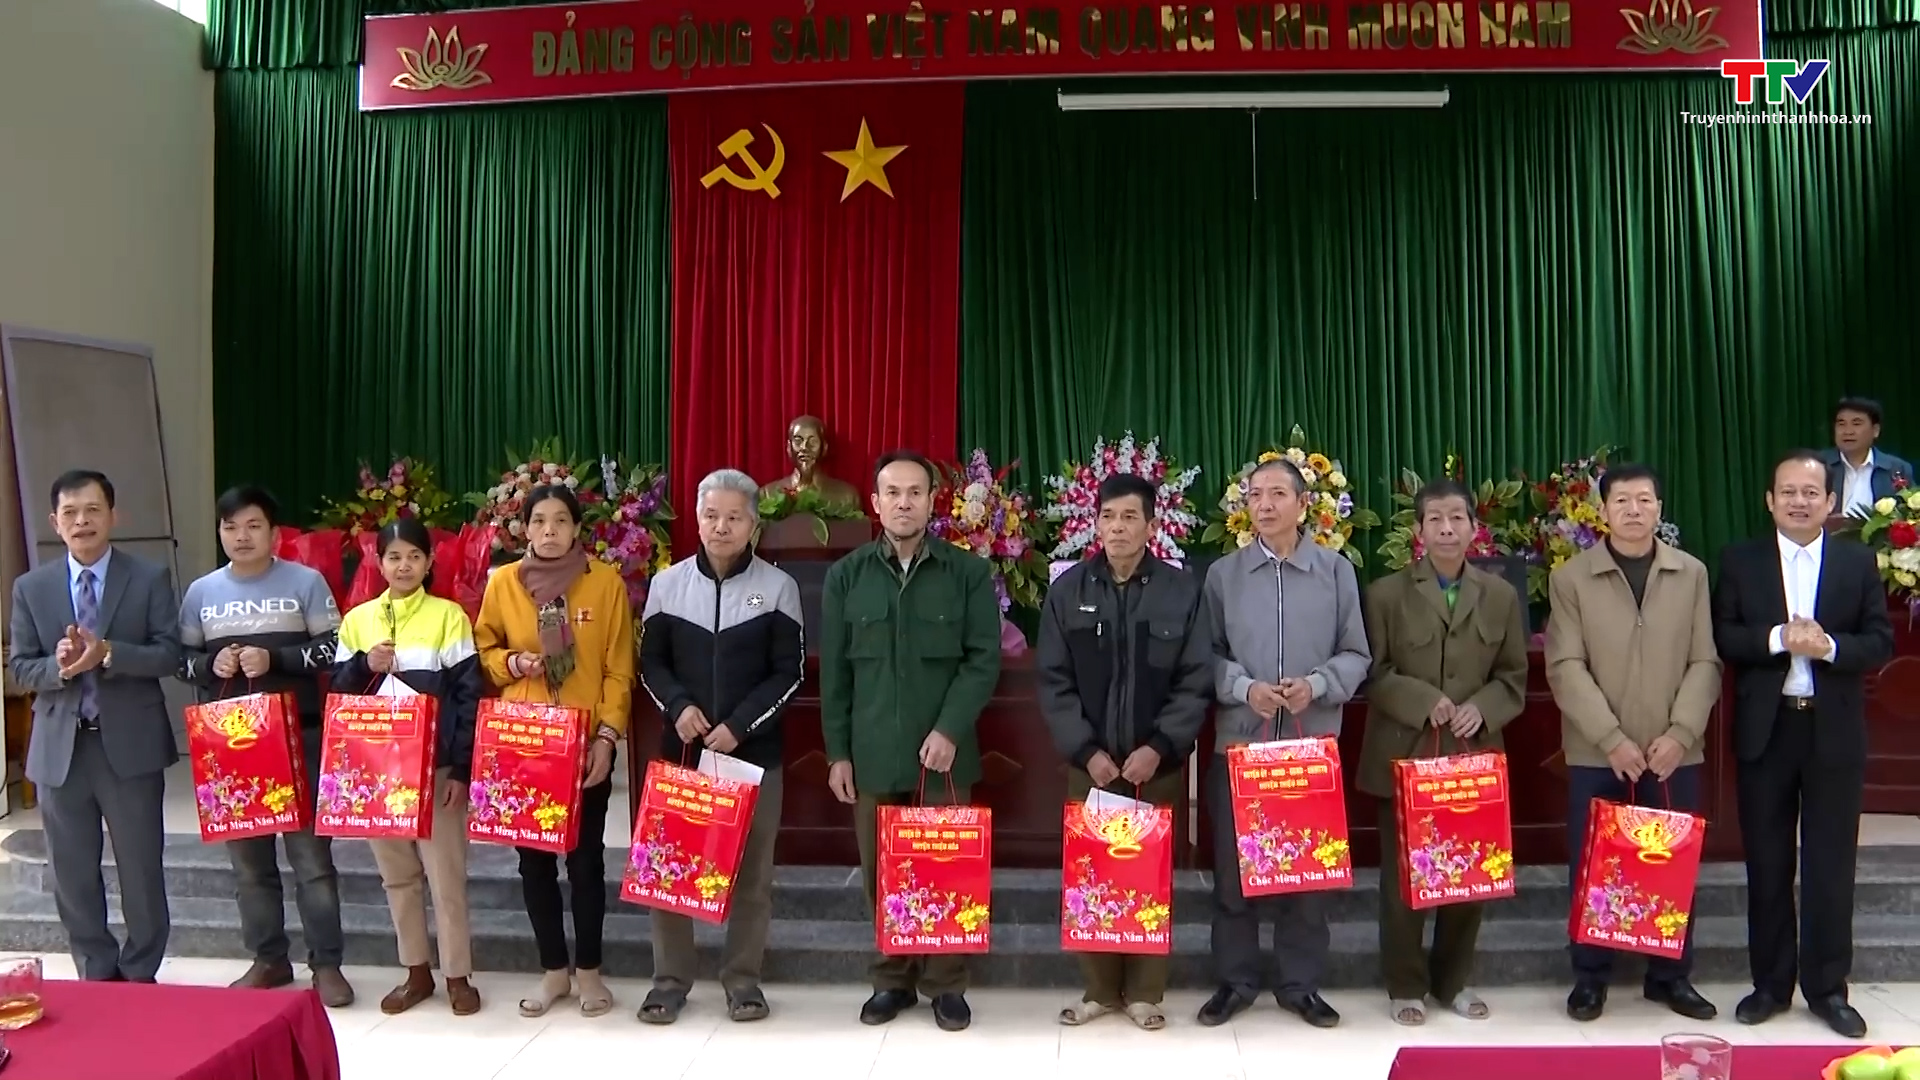 Huyện Thiệu Hóa viếng các anh hùng liệt sĩ tại hang Co Phường và tặng quà các gia đình chính sách- Ảnh 1.